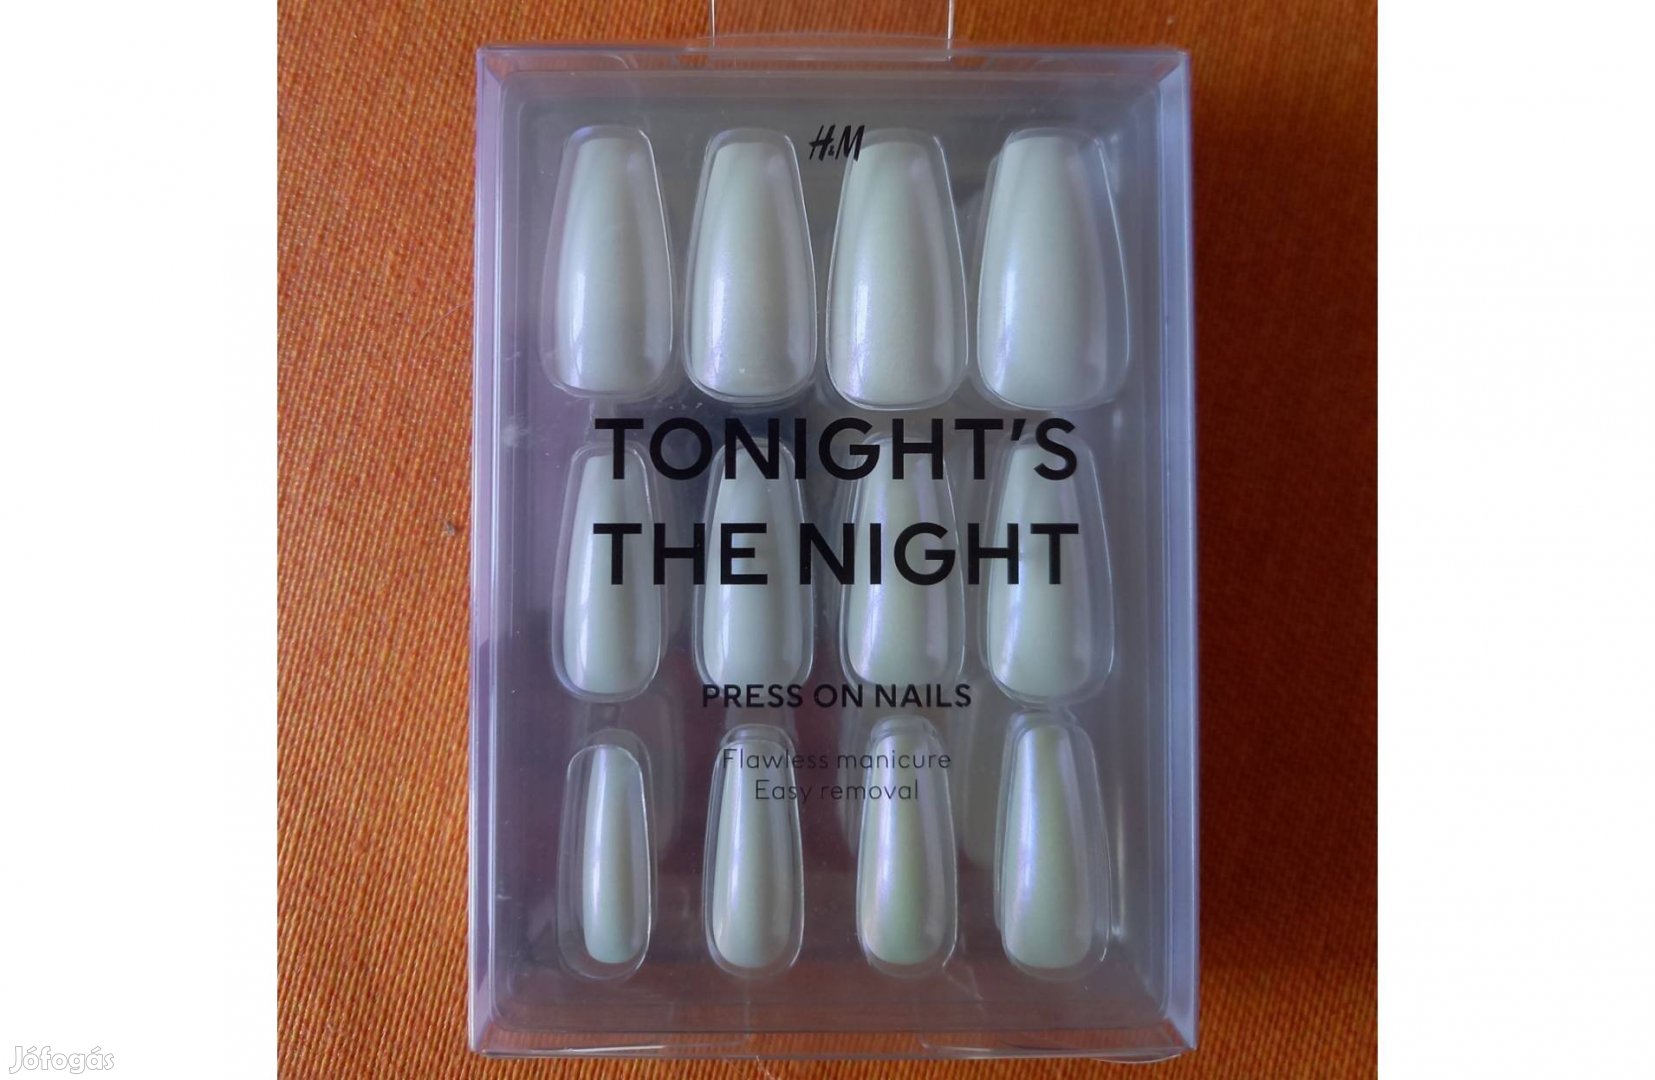 H&M bontatlan Tonight's the night - Press on nails öntapadós műkörömsz